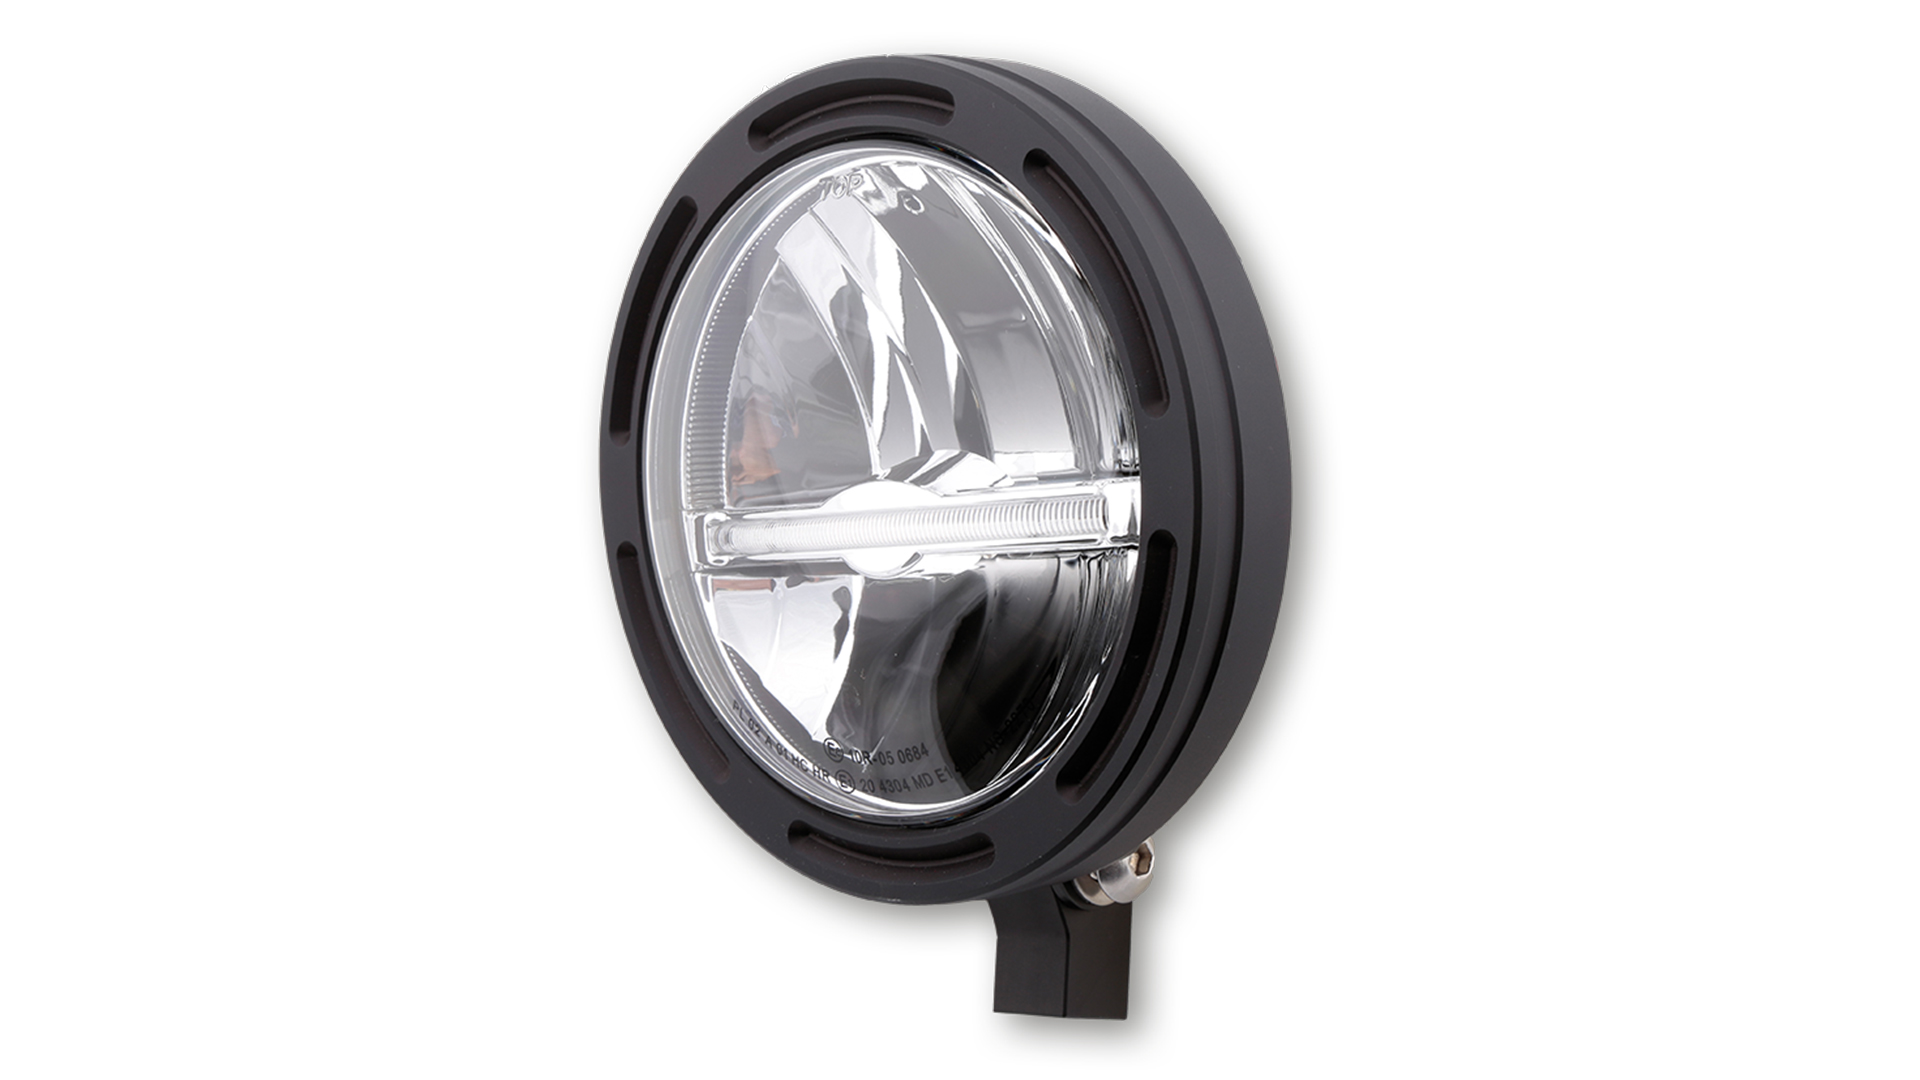 5 3/4 Zoll LED Hauptscheinwerfer FRAME-R2 JACKSON mit Standlichtleiste (Light guide system), rund, schwarz. Erhältlich mit seitlicher oder unterer Befestigung, E-geprüft.